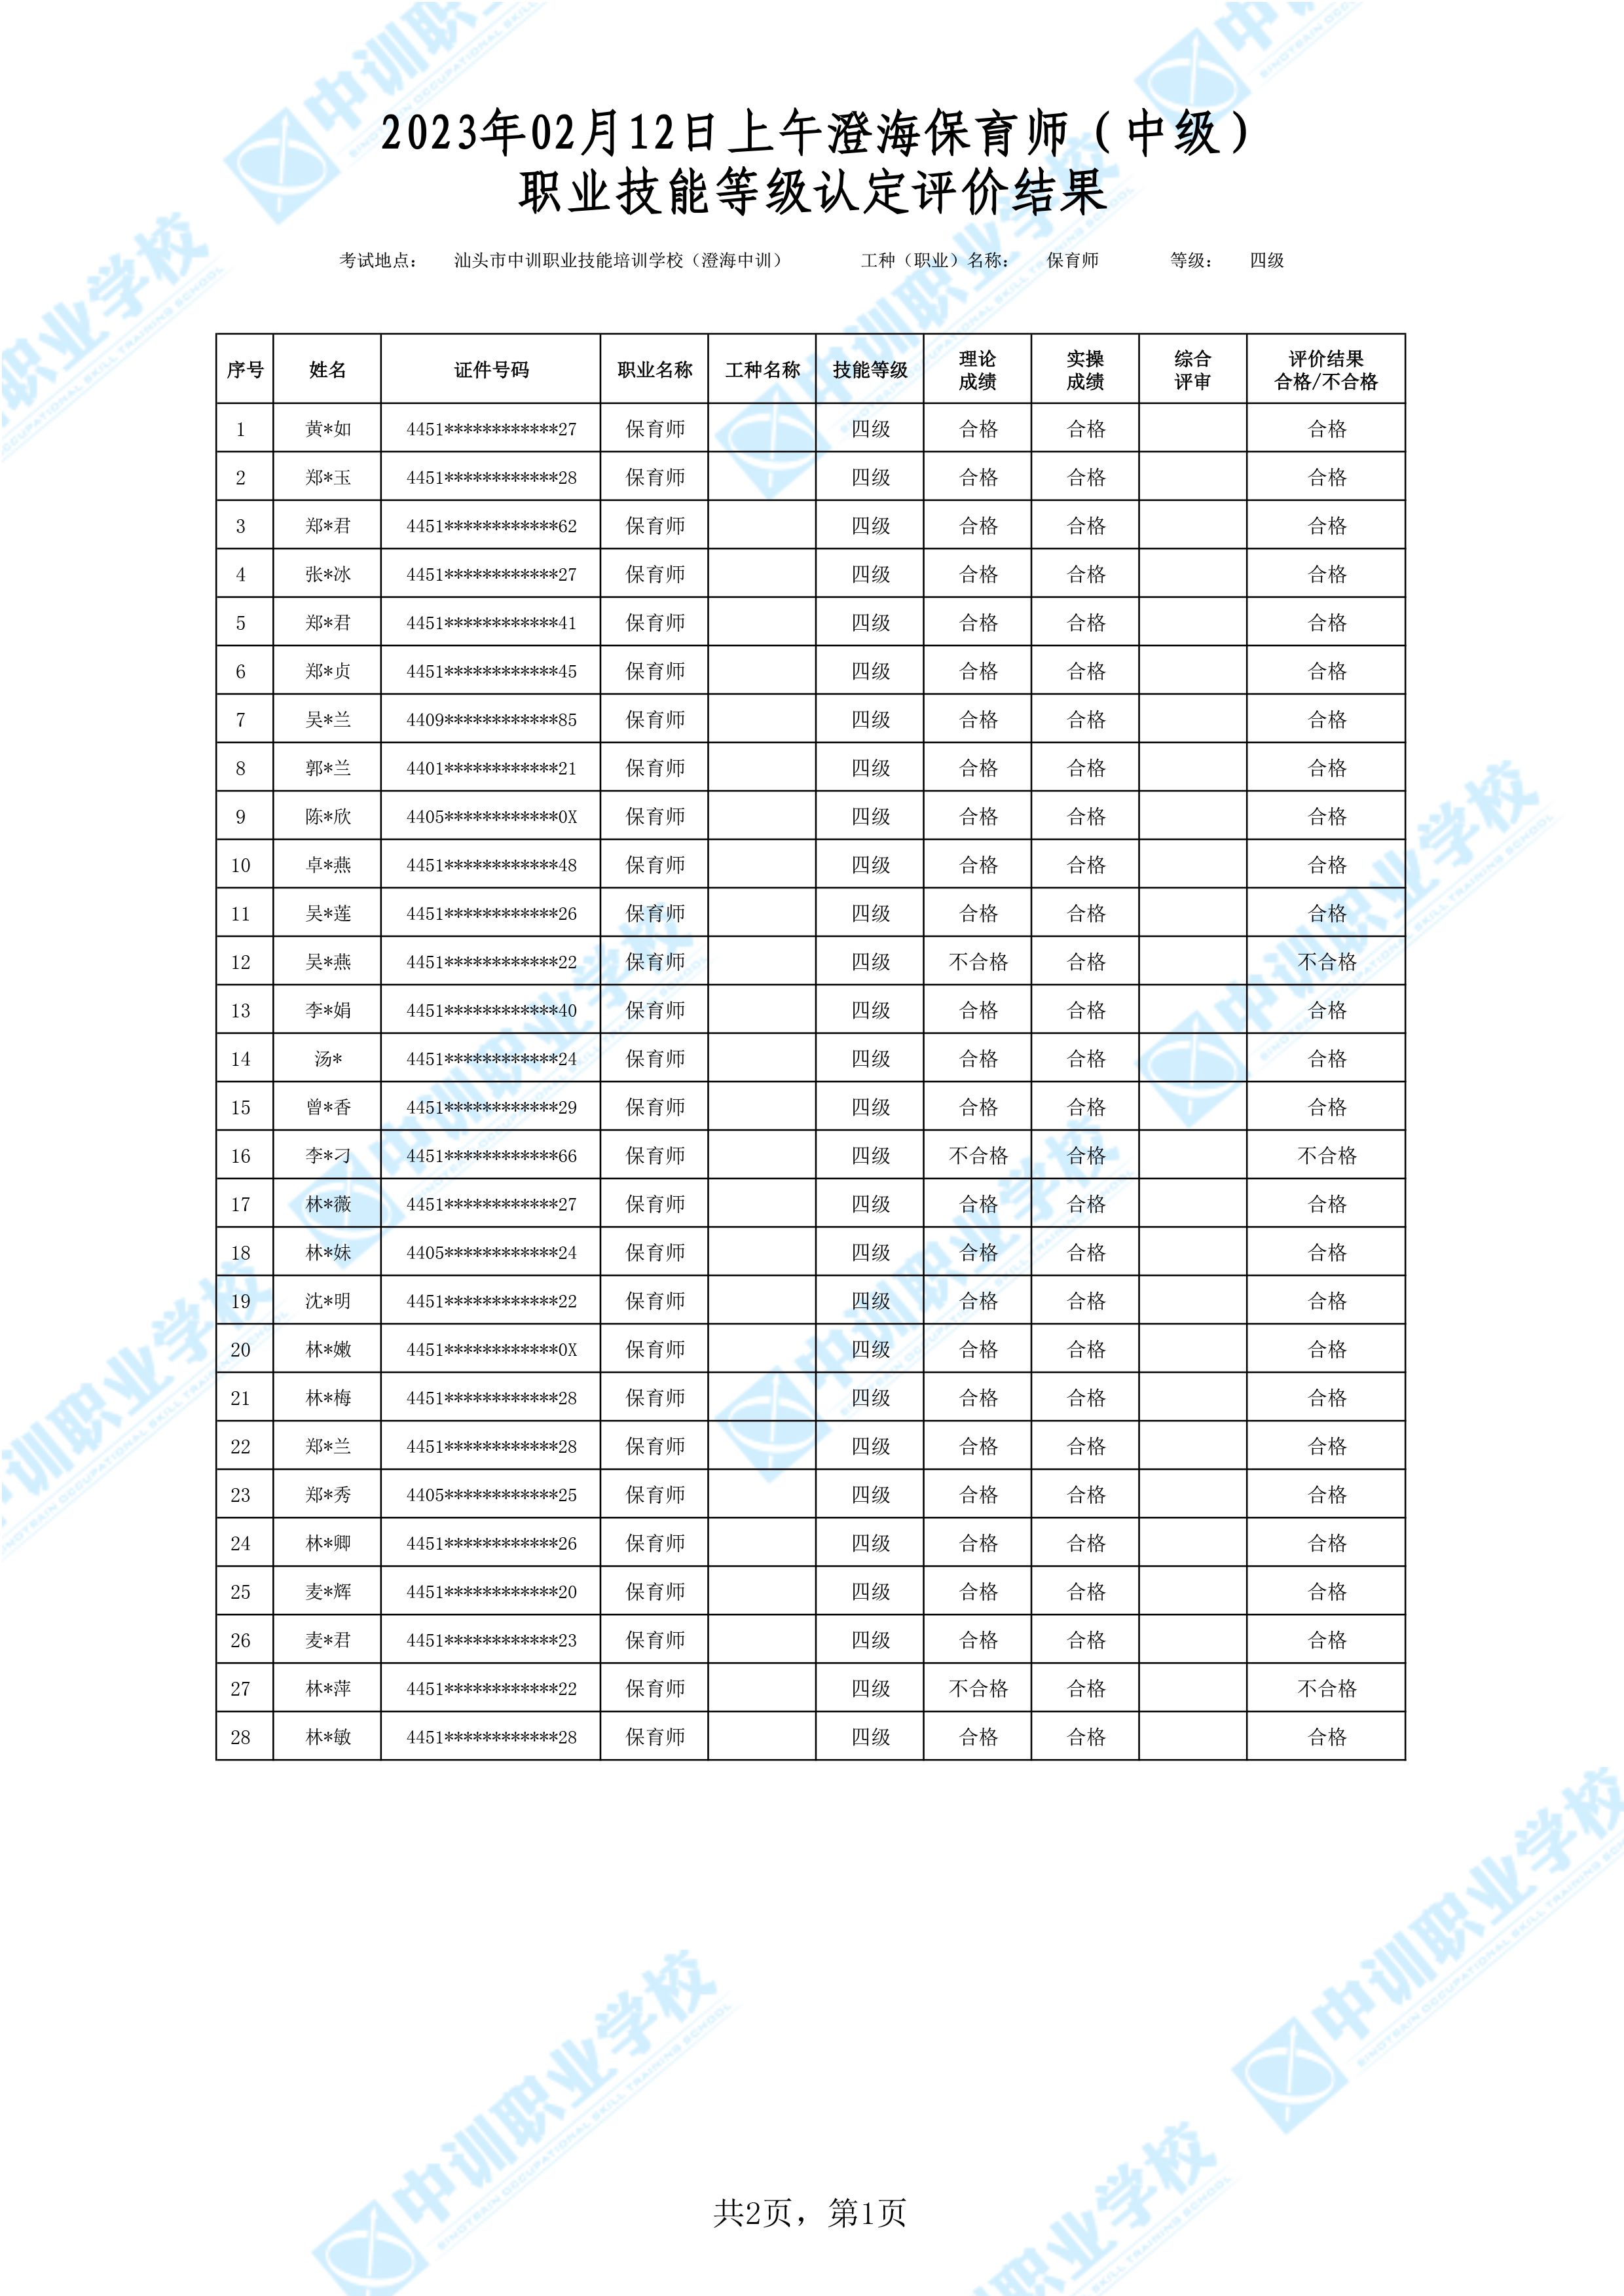 2023-02-12日上午澄海中级保育师考试鉴定名册表-1 副本.jpg